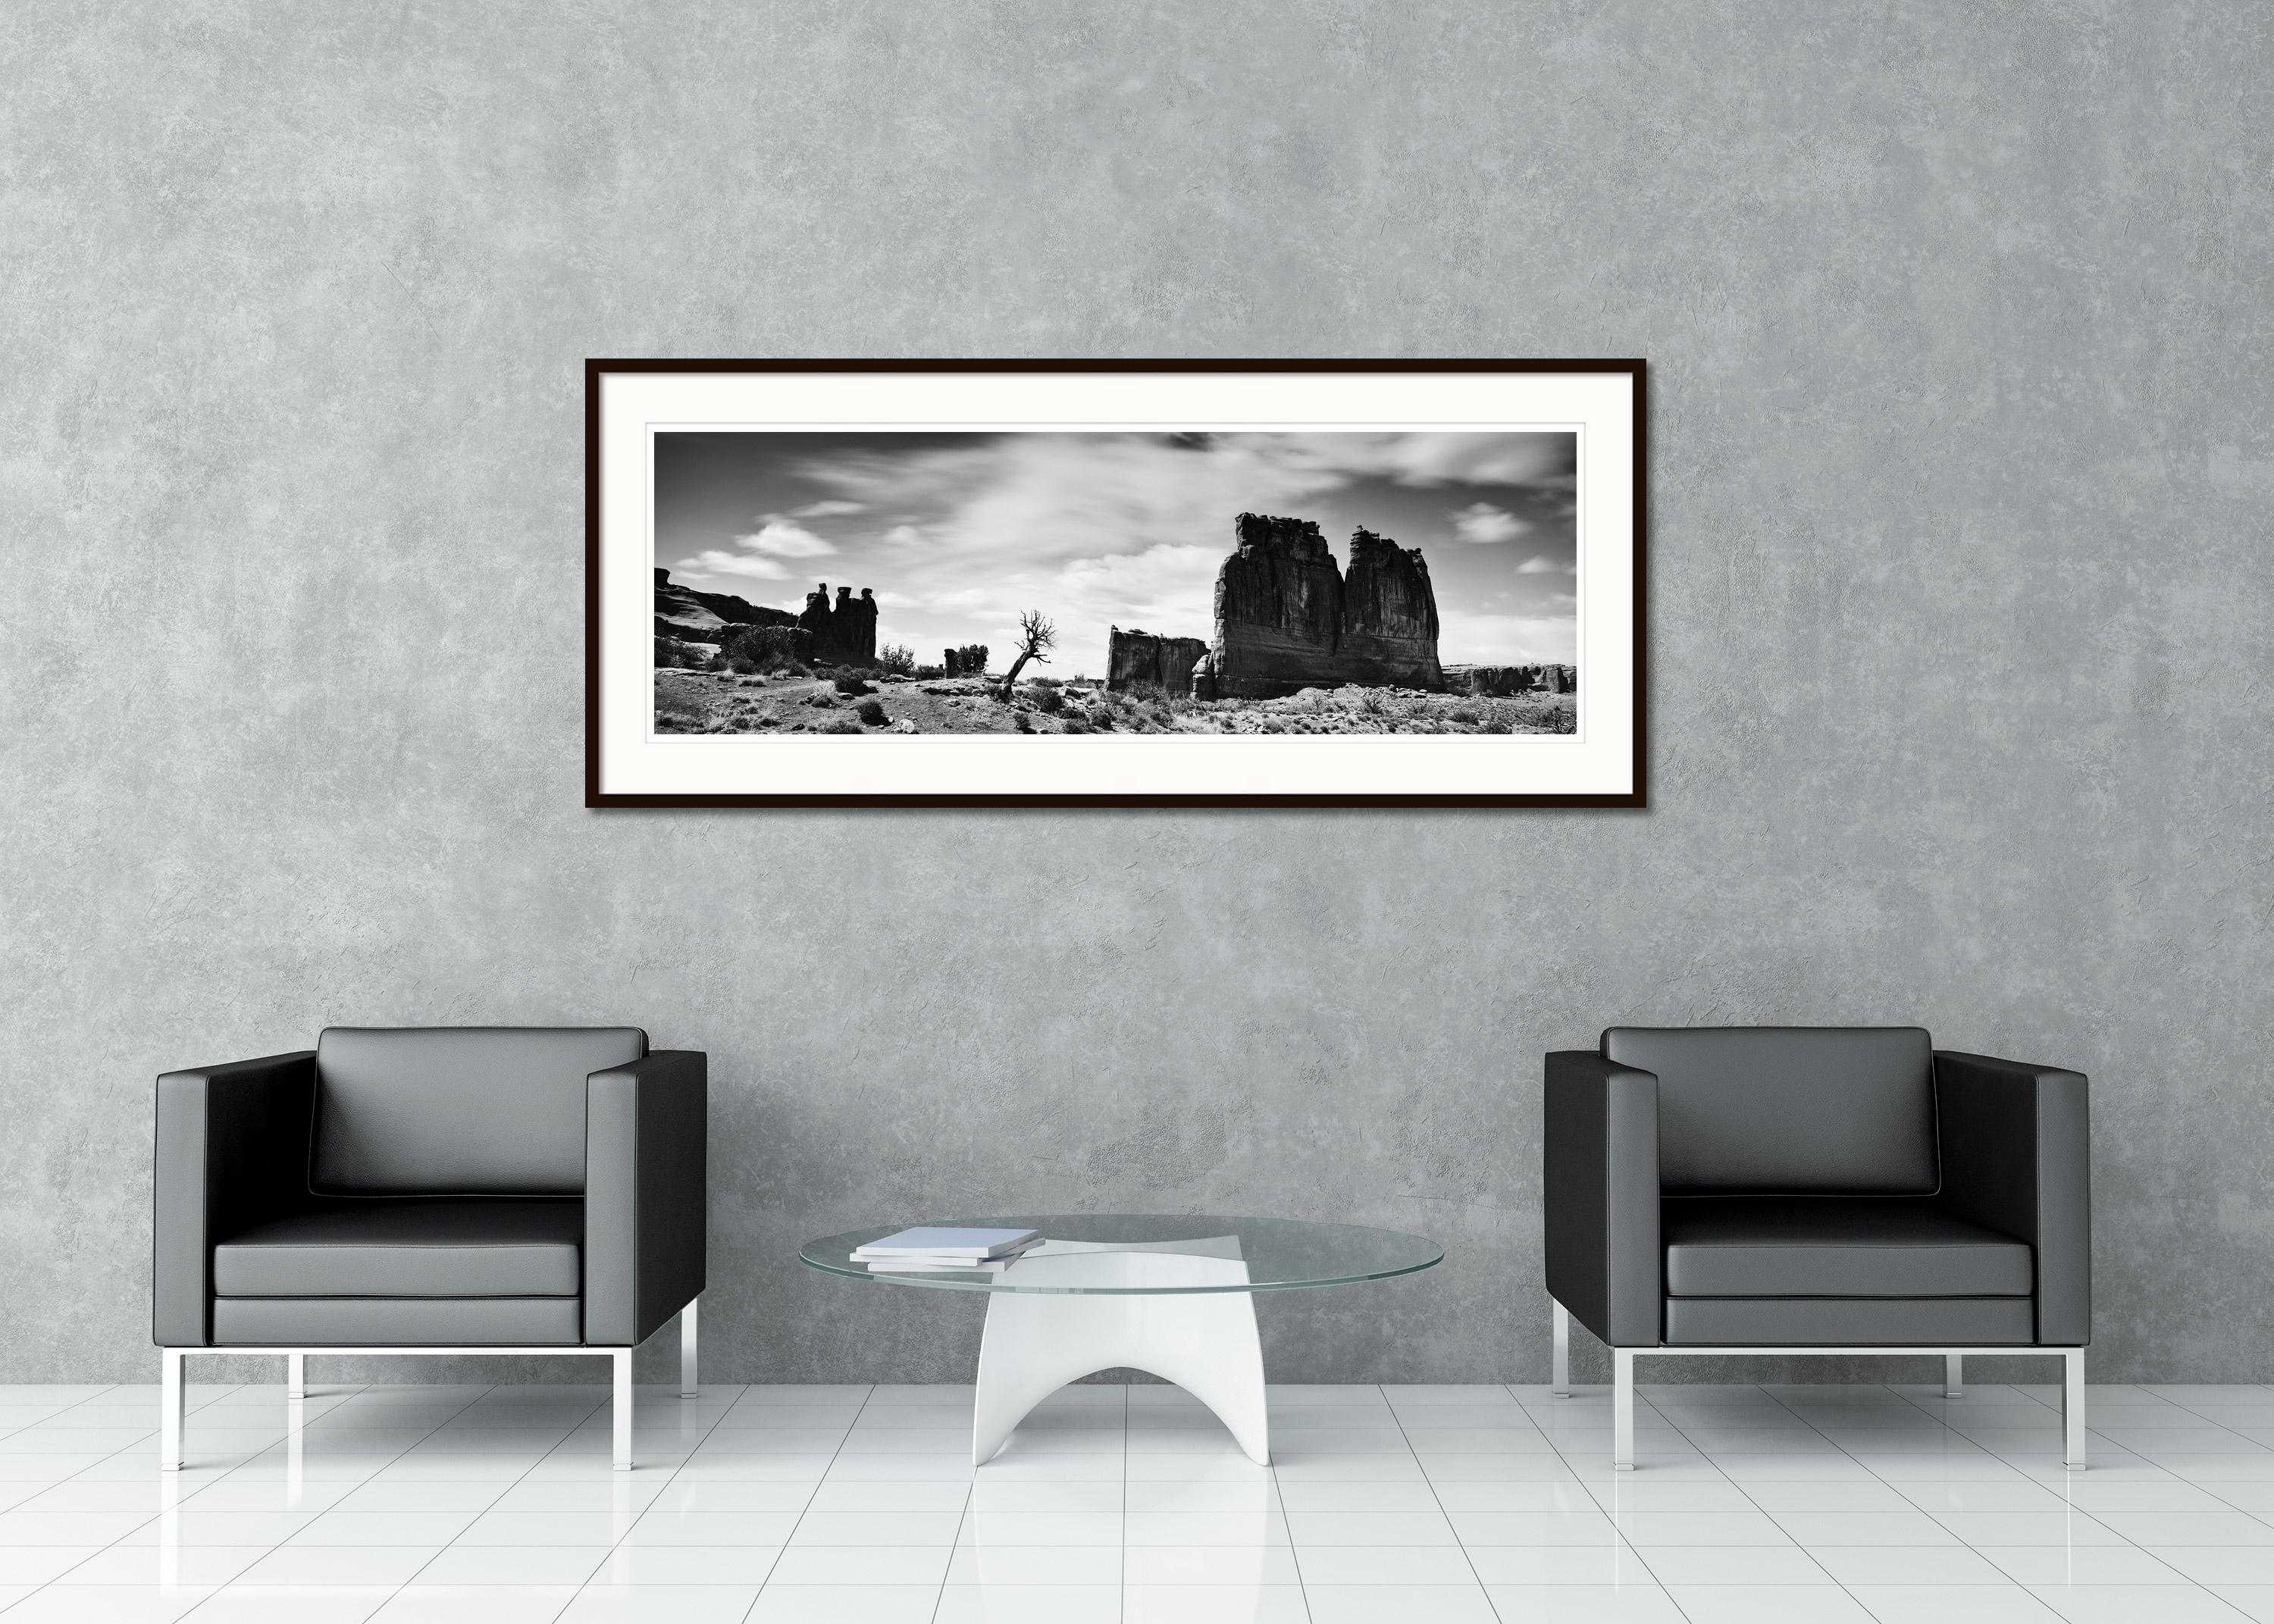 Schwarz-Weiß-Fotografie für Landschaftspanoramen - Wild West Panorama, Arches National Park, Utah, USA. Pigmenttintendruck, Auflage 7, signiert, betitelt, datiert und nummeriert vom Künstler. Mit Echtheitszertifikat. Bedruckt mit einem 4 cm breiten